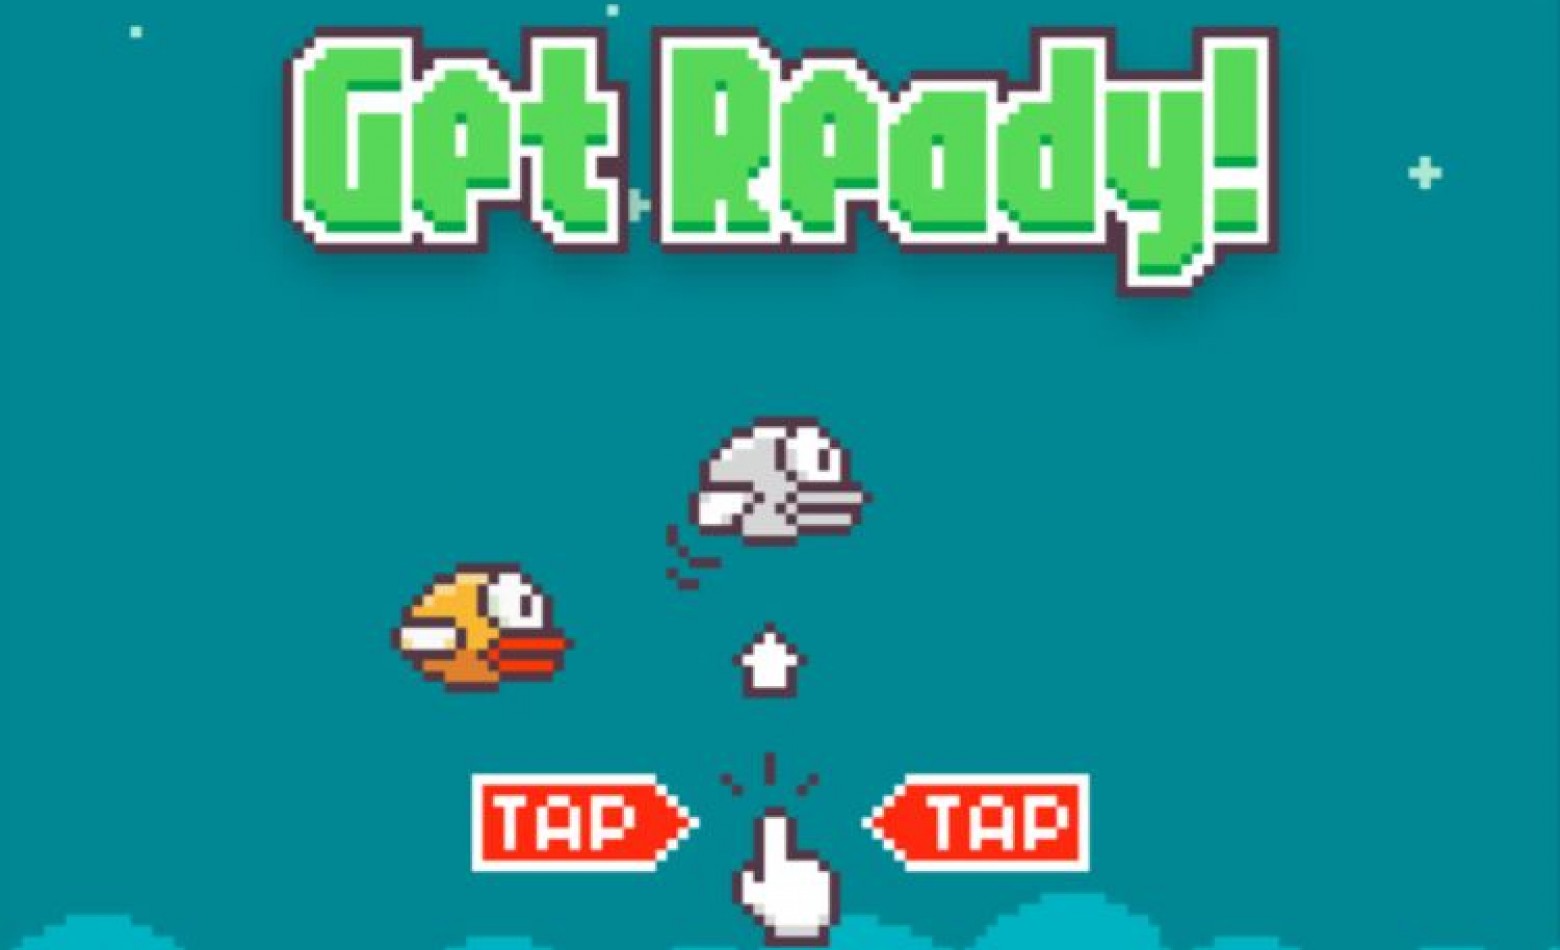 Inspiração para Flappy Bird veio de uma brincadeira com bolas de ping-pong